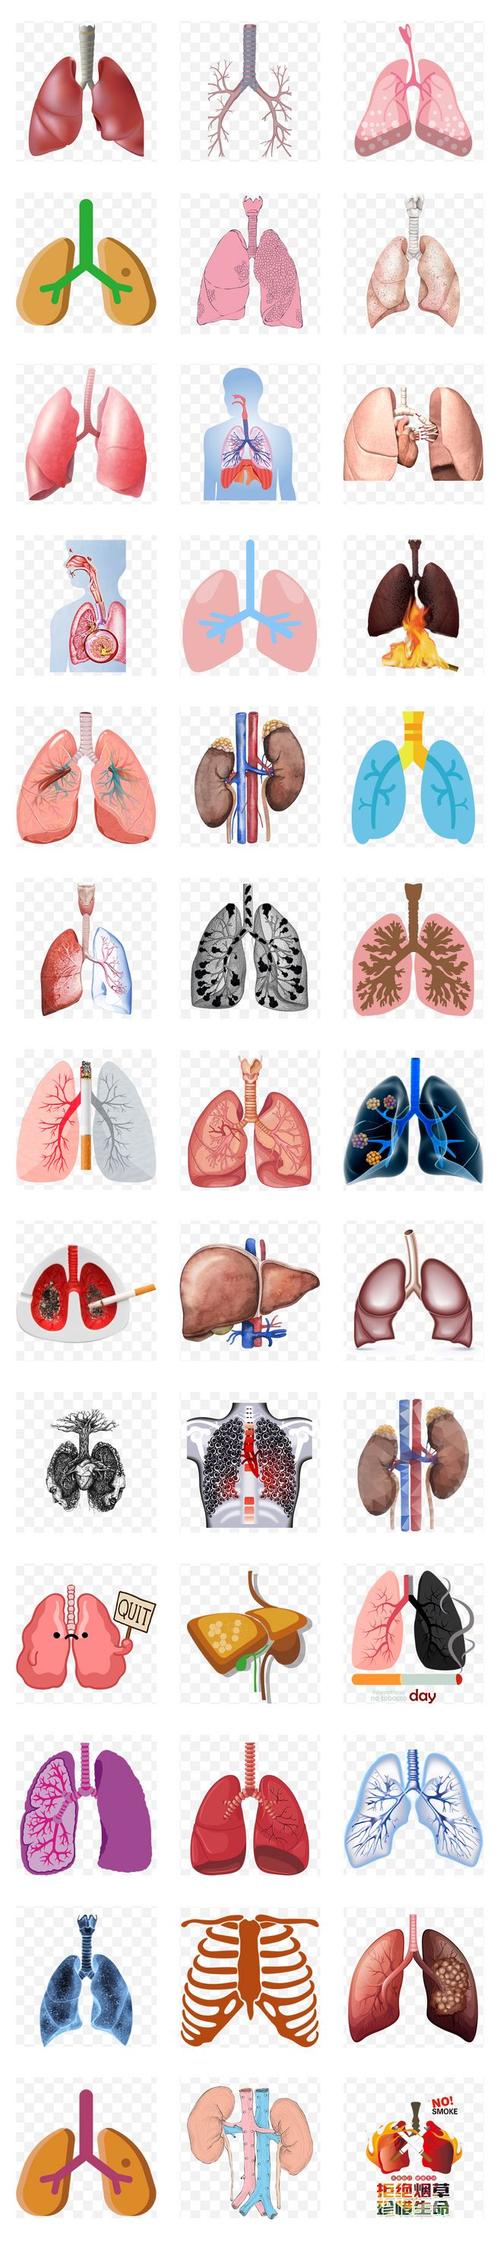 人体肺部结构图